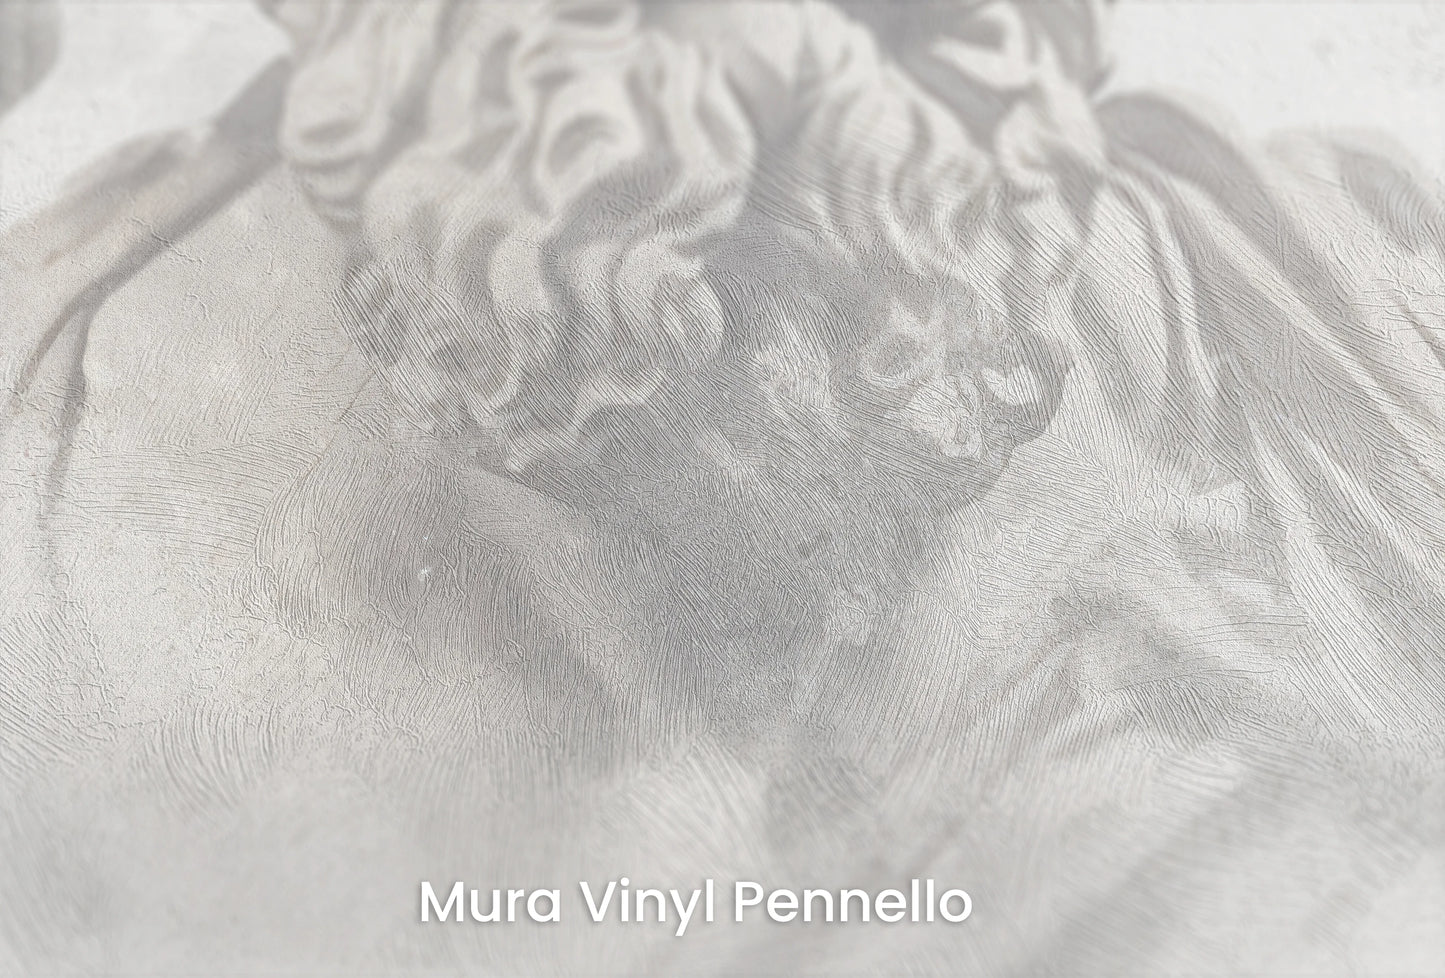 Zbliżenie na artystyczną fototapetę o nazwie Poseidon's Realm na podłożu Mura Vinyl Pennello - faktura pociągnięć pędzla malarskiego.